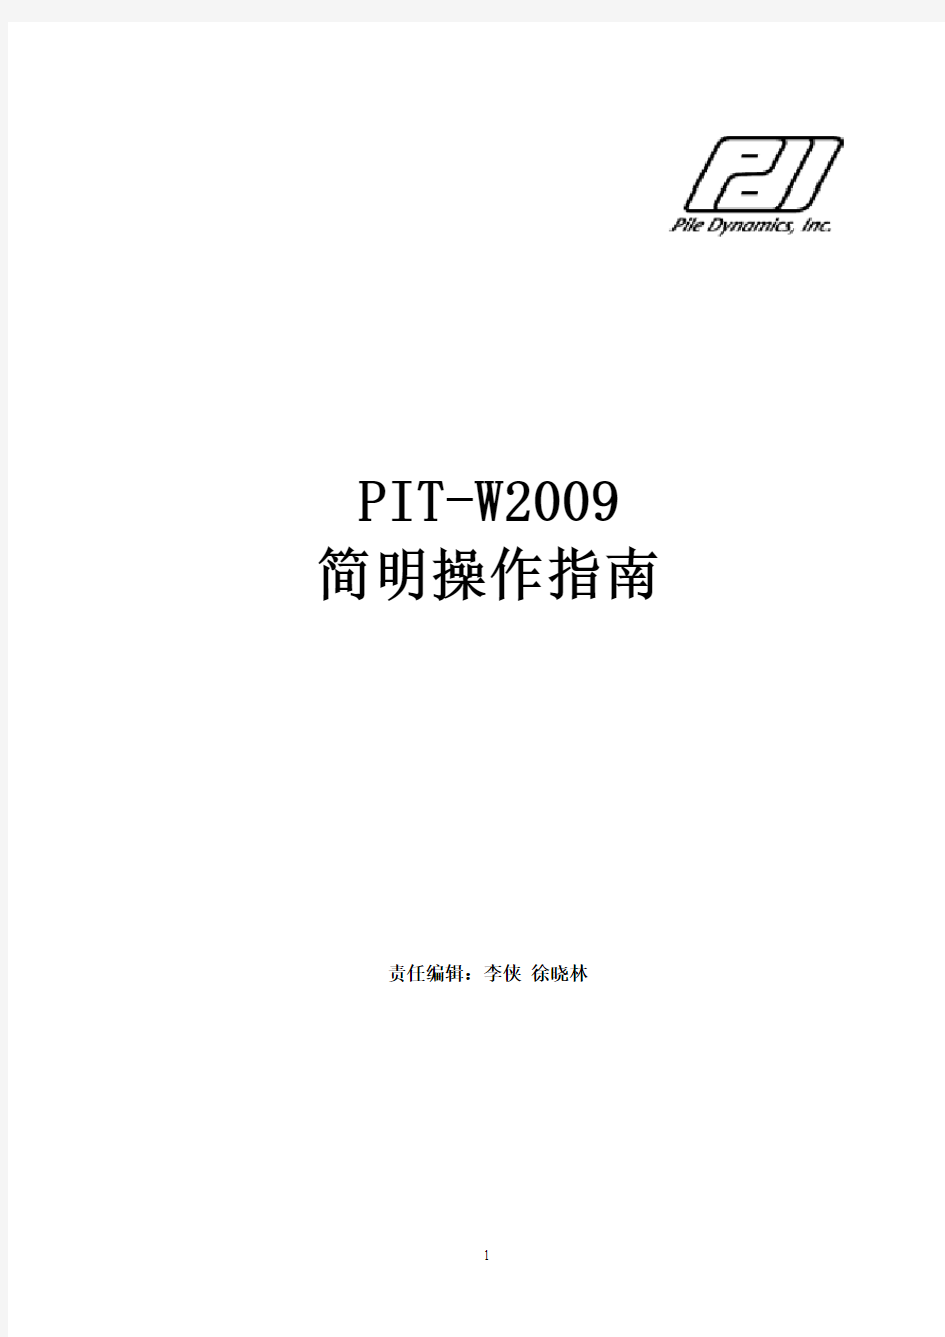 PIT-W2009中文操作手册(最新)精简版